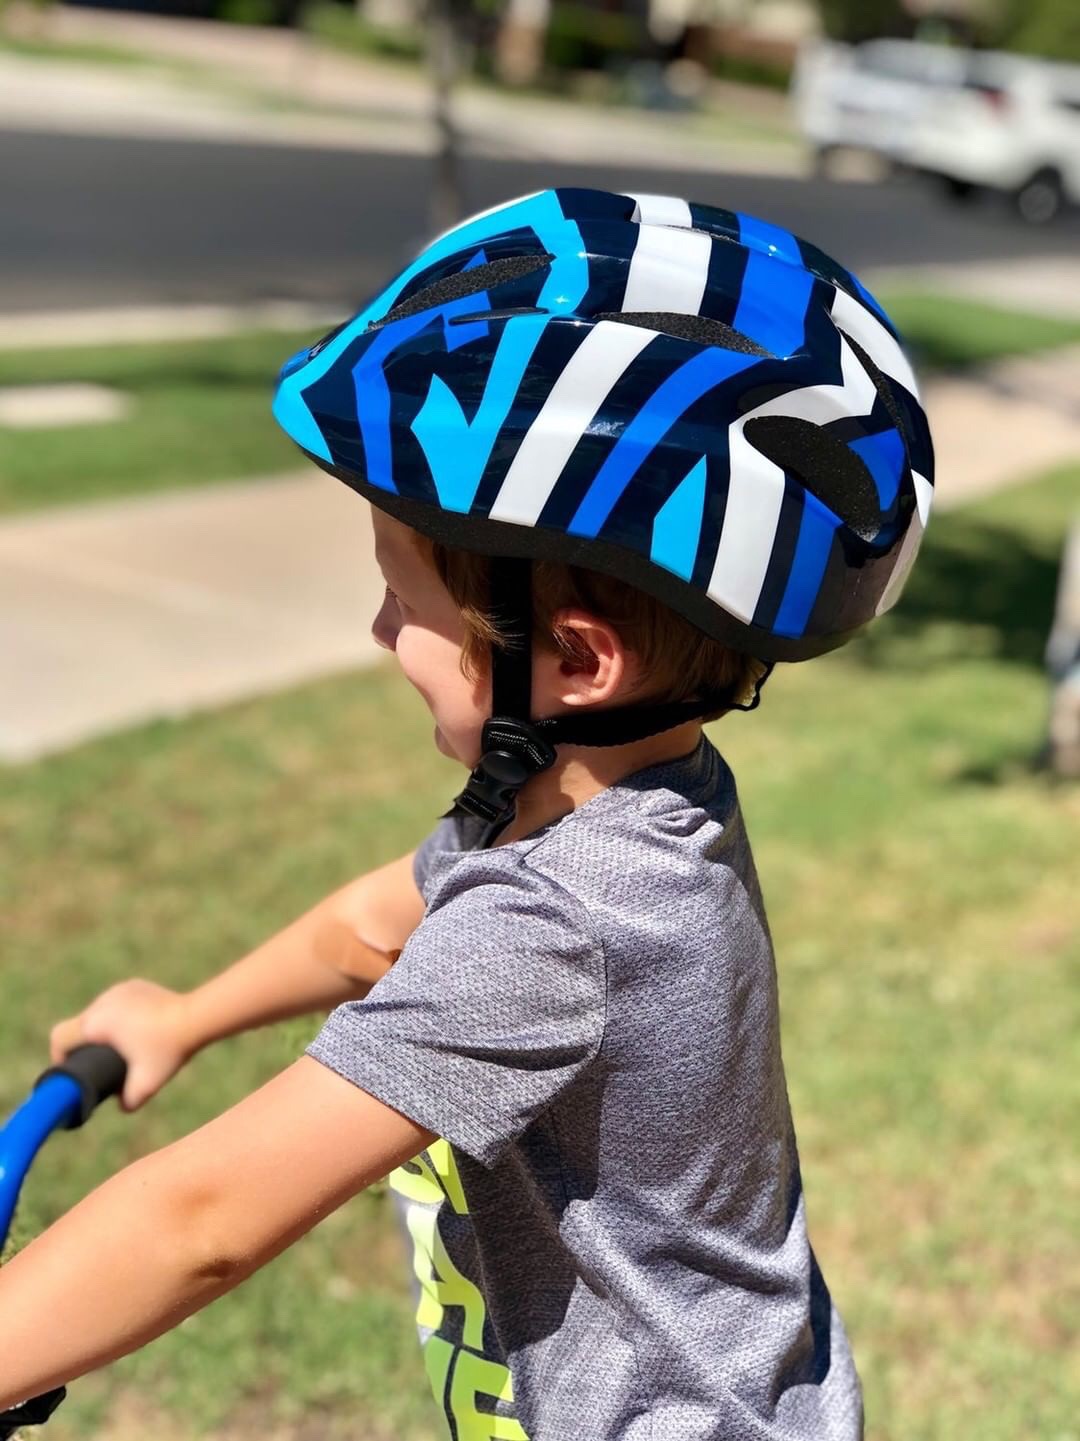 M Merkapa Kids Bike Helmet Adjustable Bicycle Helmets for Toddler and Youth 